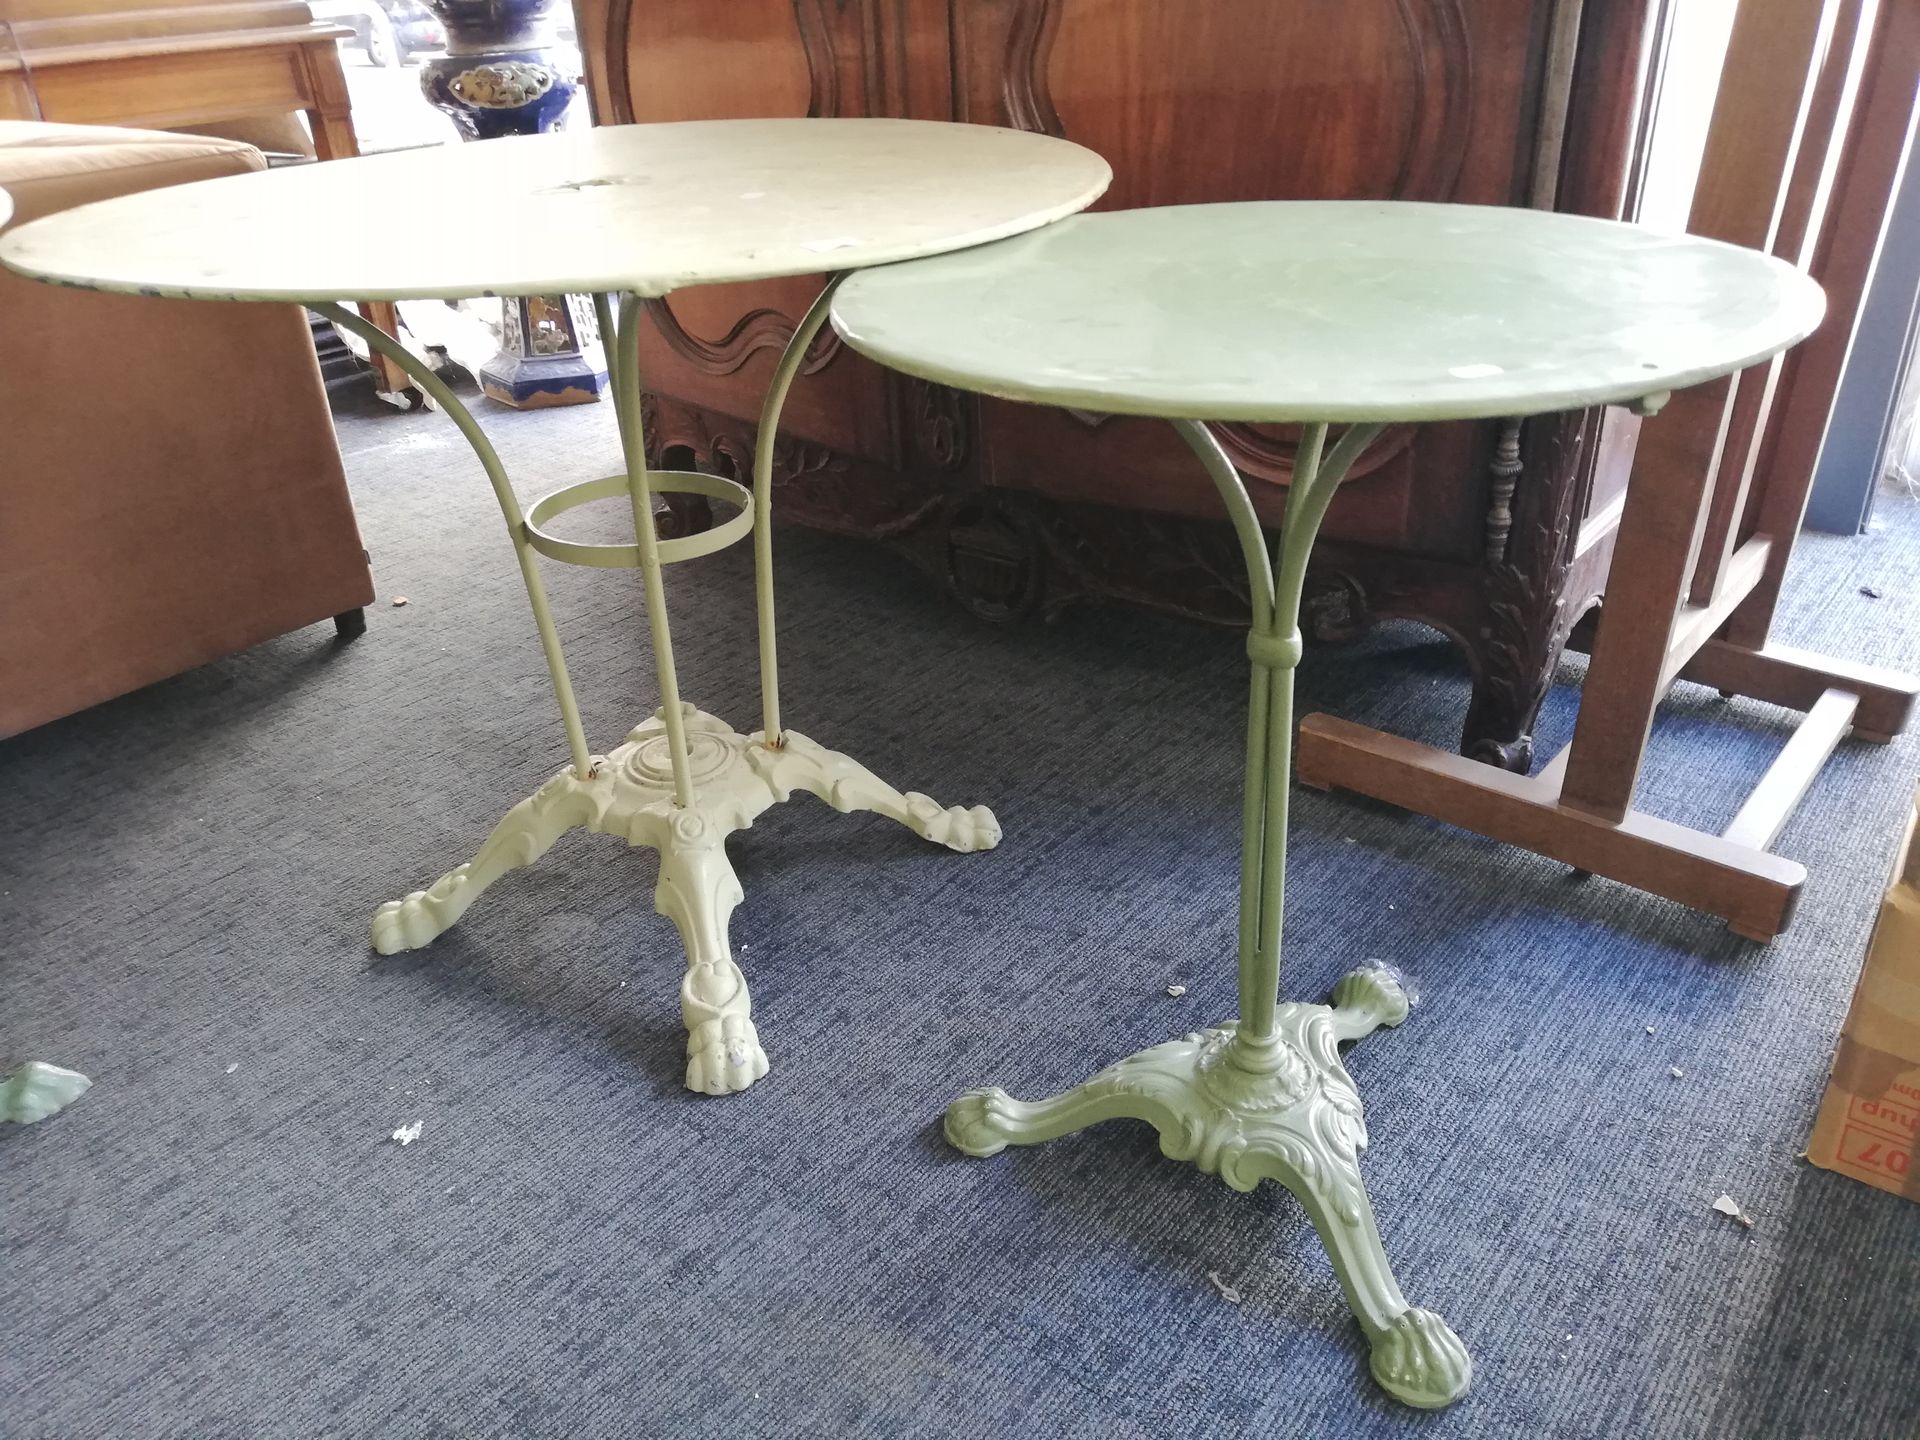 Null 绿色漆面金属圆形花园桌。高度：72厘米，直径：88厘米（氧化和轻微事故）；附有一个涂漆的金属基座桌。高度：70厘米 直径：54.5厘米。